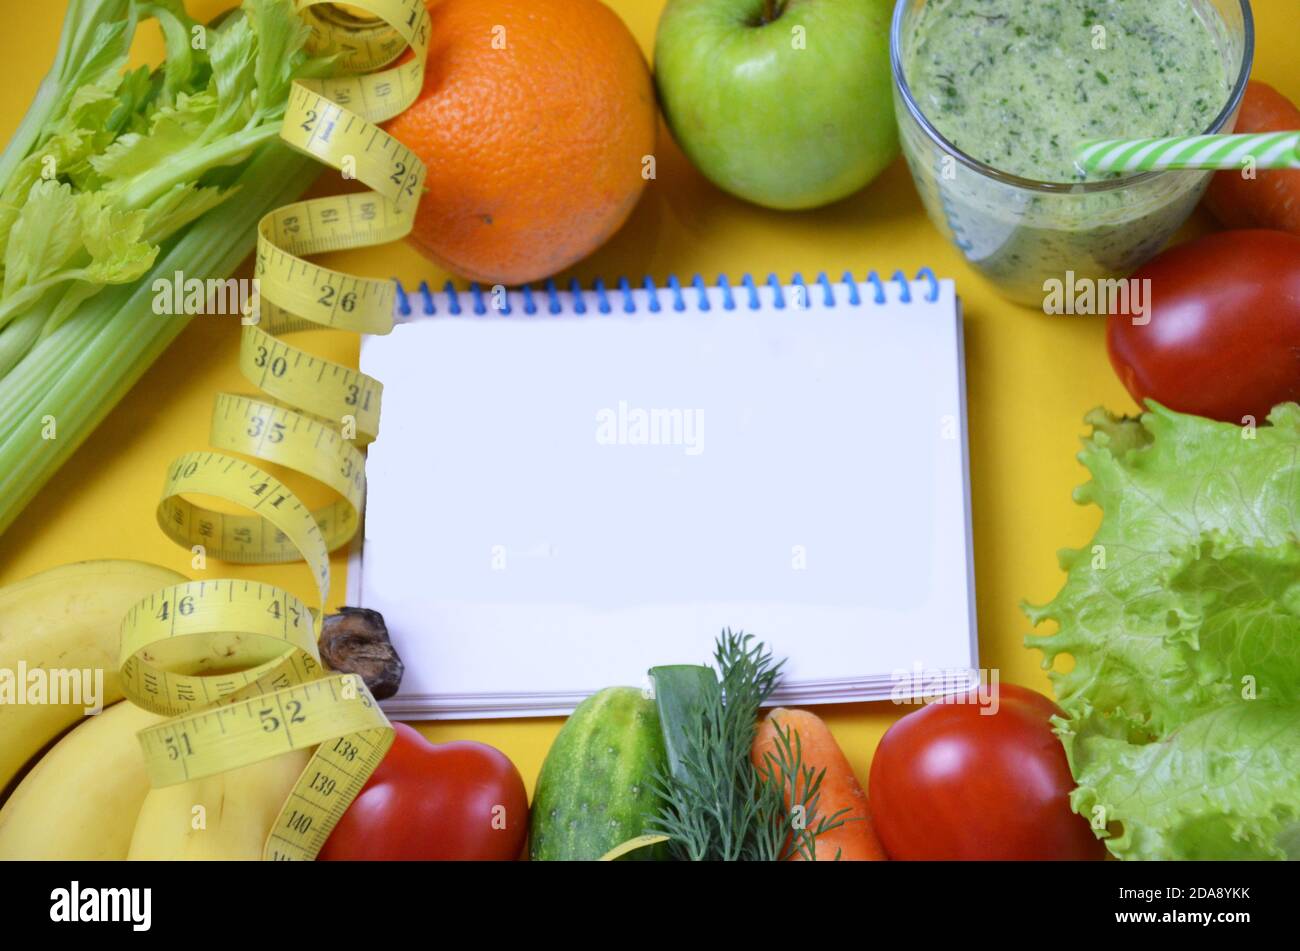 Obst-und Gemüse-Smoothie, Saft. Ernährung vegetarisch ist eine gesunde kalorienarme Lebensmittel. Notebook mit einer Diät-Plan Stockfoto